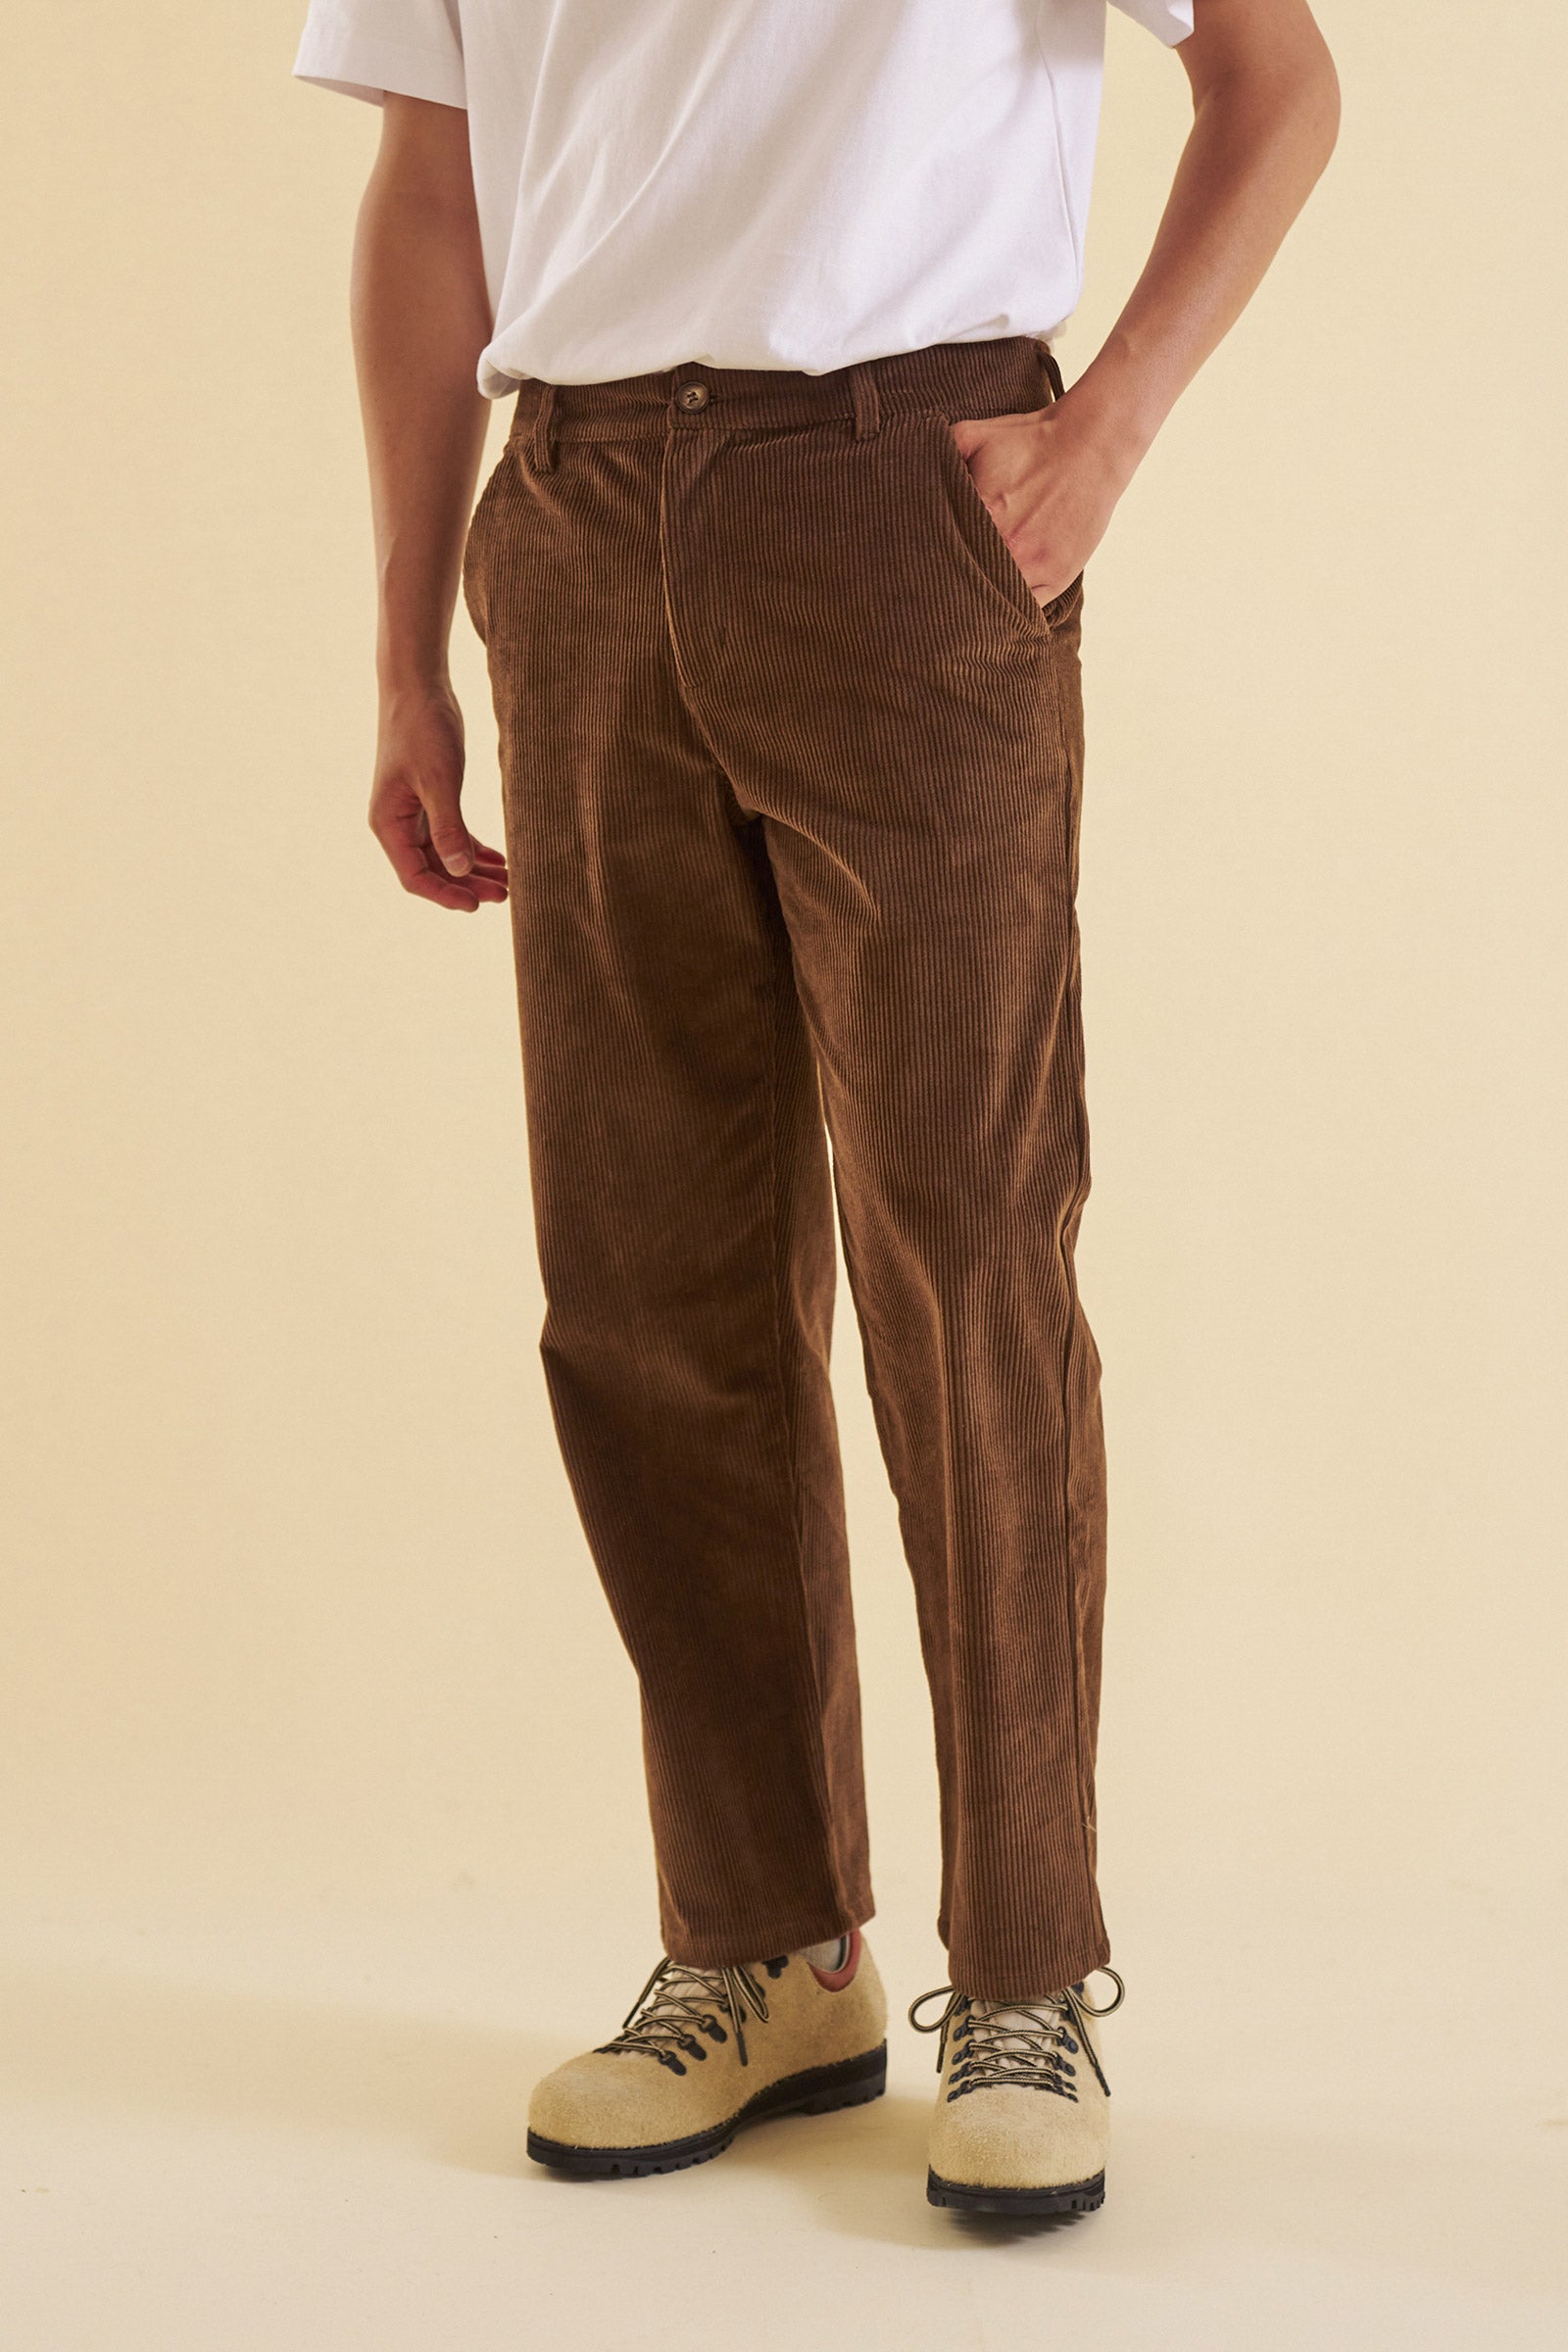 Buy Men Loose Fit Corduroy Pants Online at Best Prices in India - JioMart.